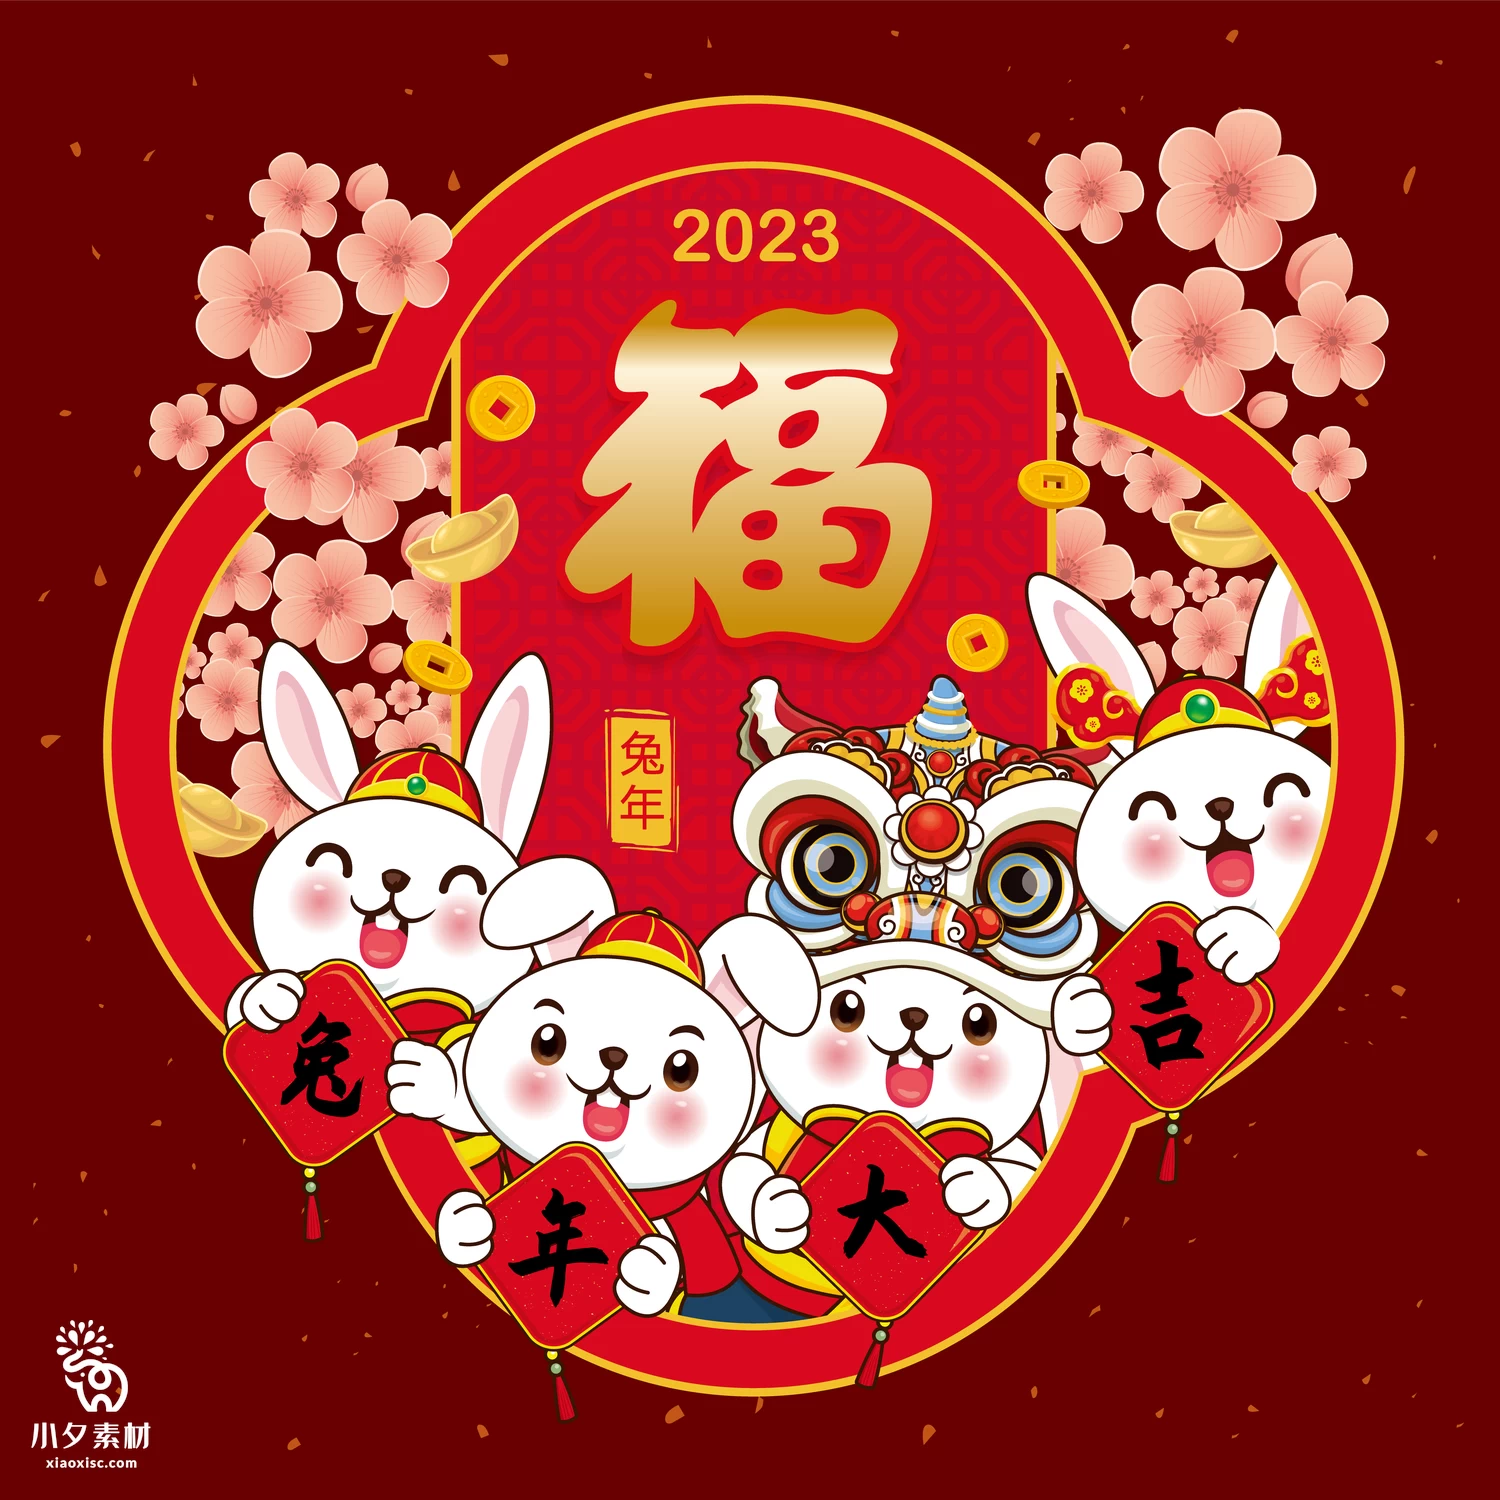 2023年兔年恭贺新春新年快乐喜庆节日宣传海报图片AI矢量设计素材【015】